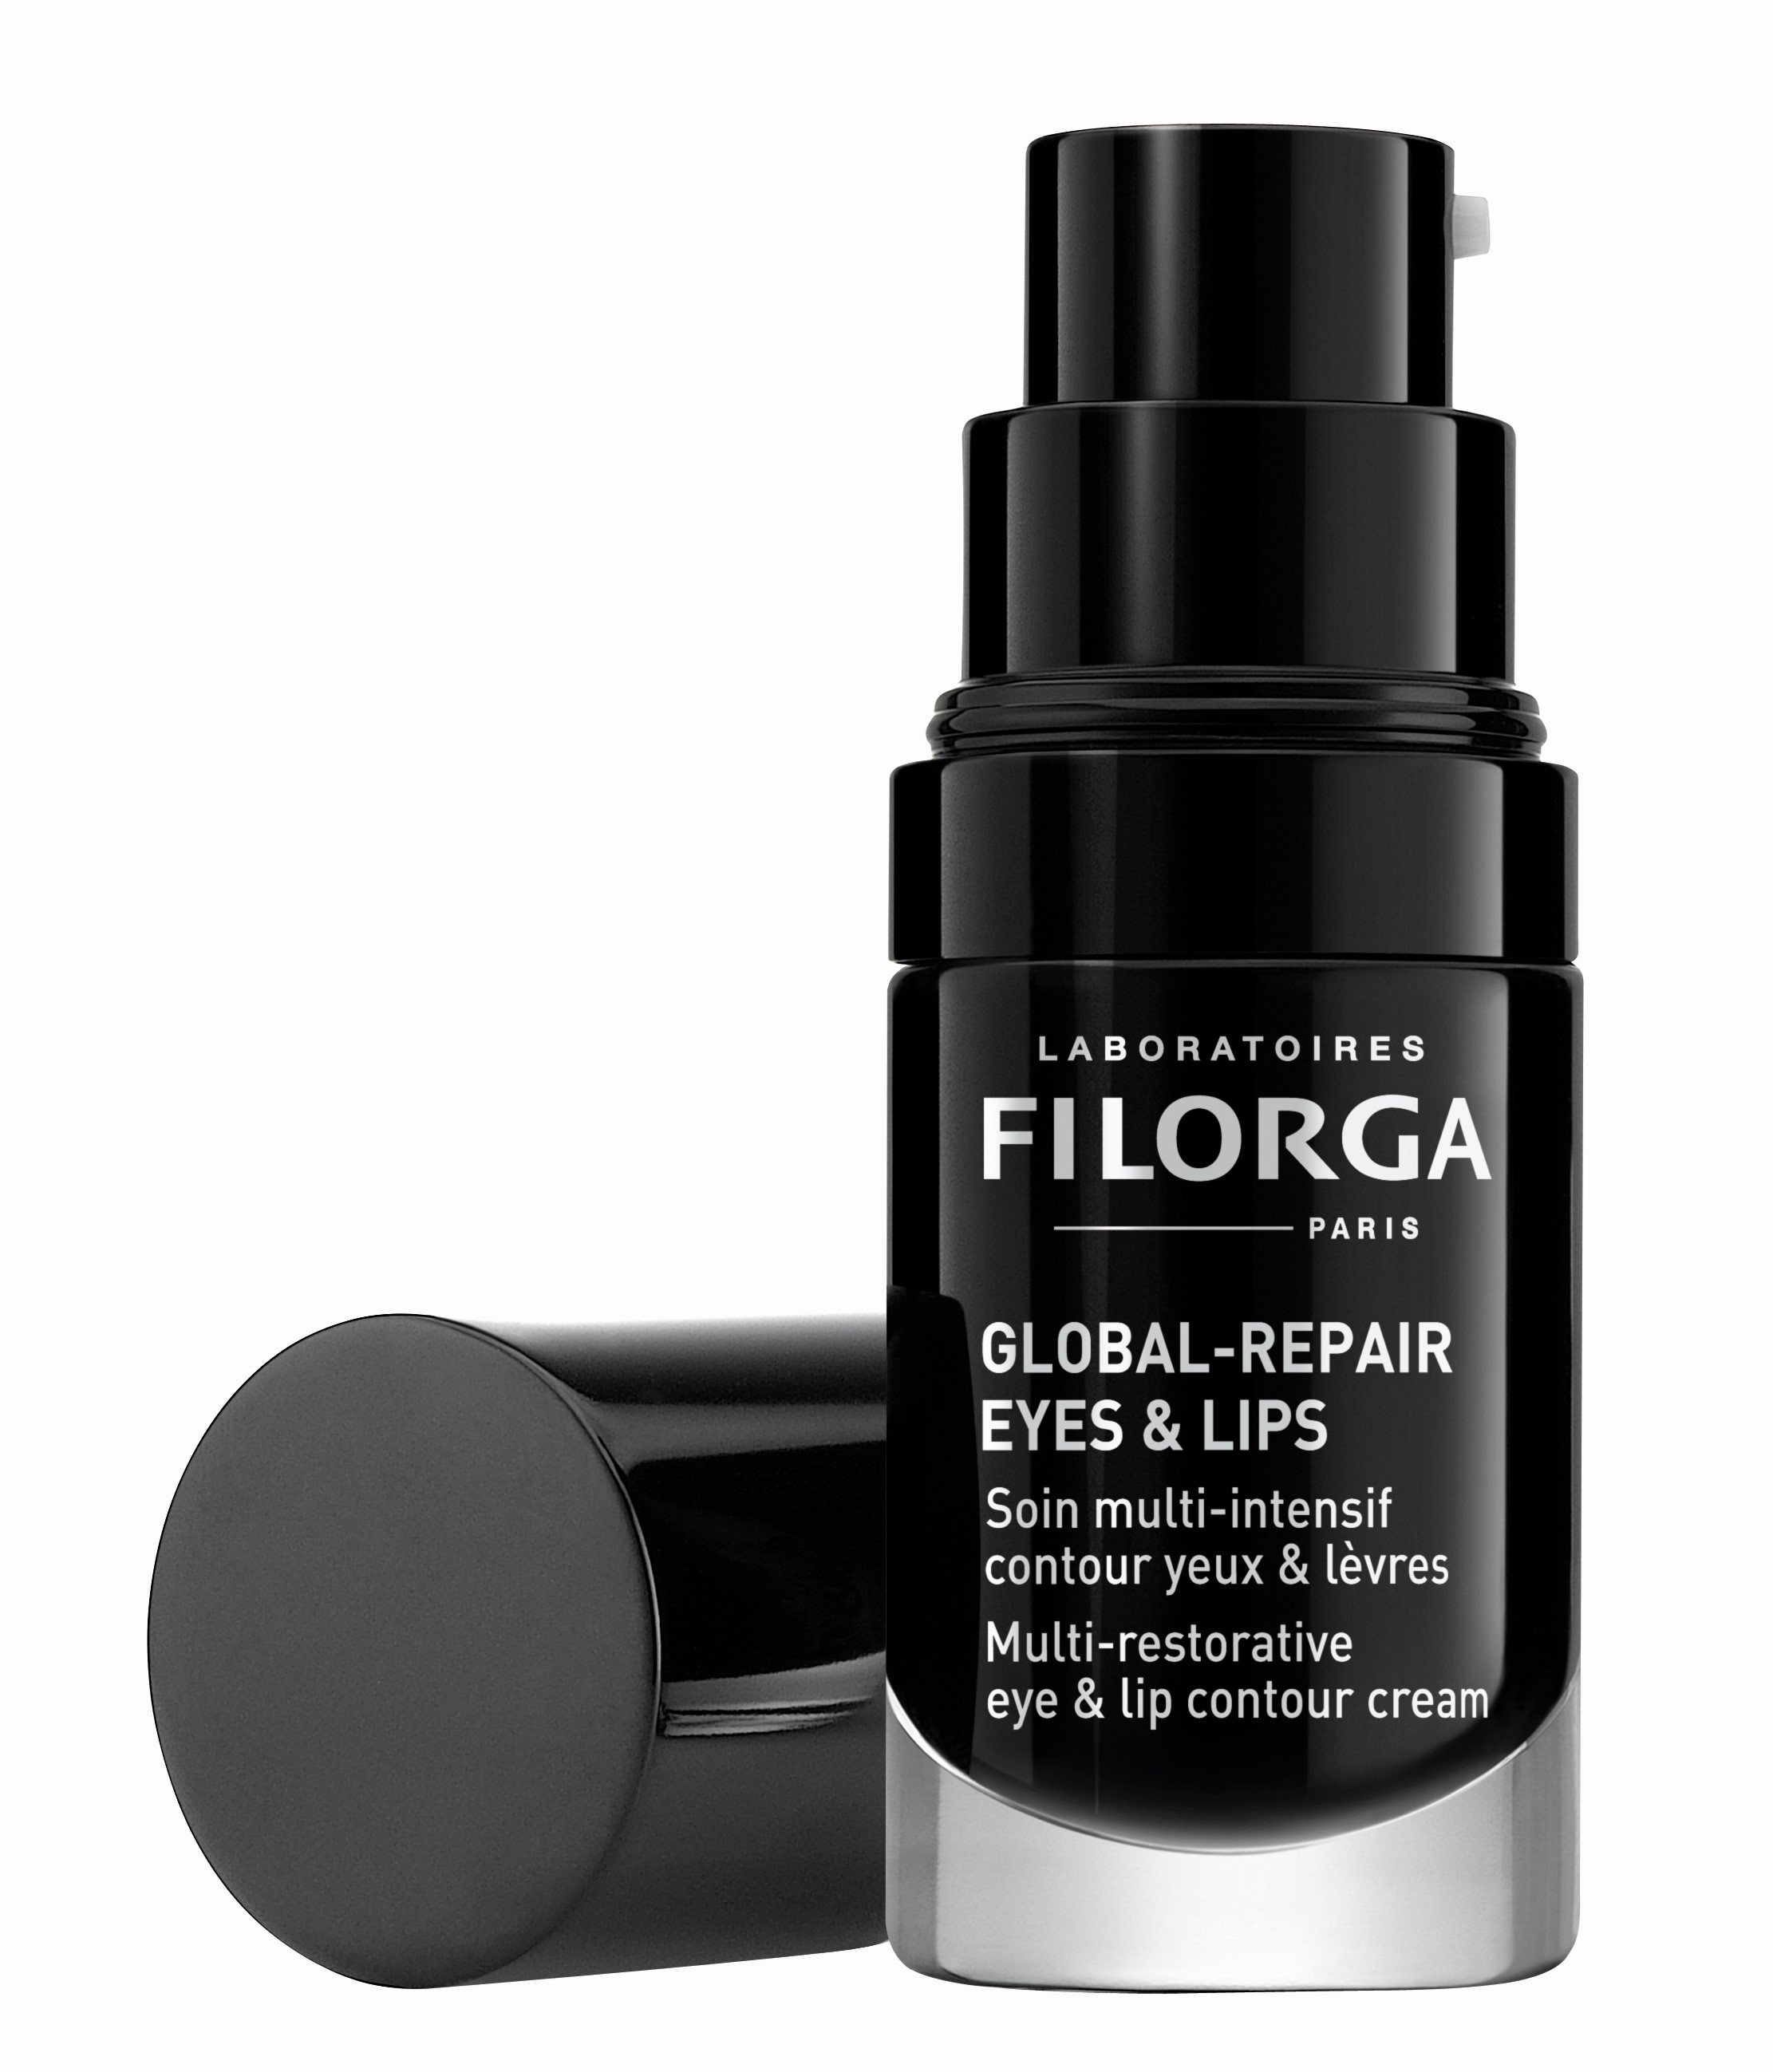 Billede af Filorga Global-Repair Eyes & Lips 15 ml hos Well.dk